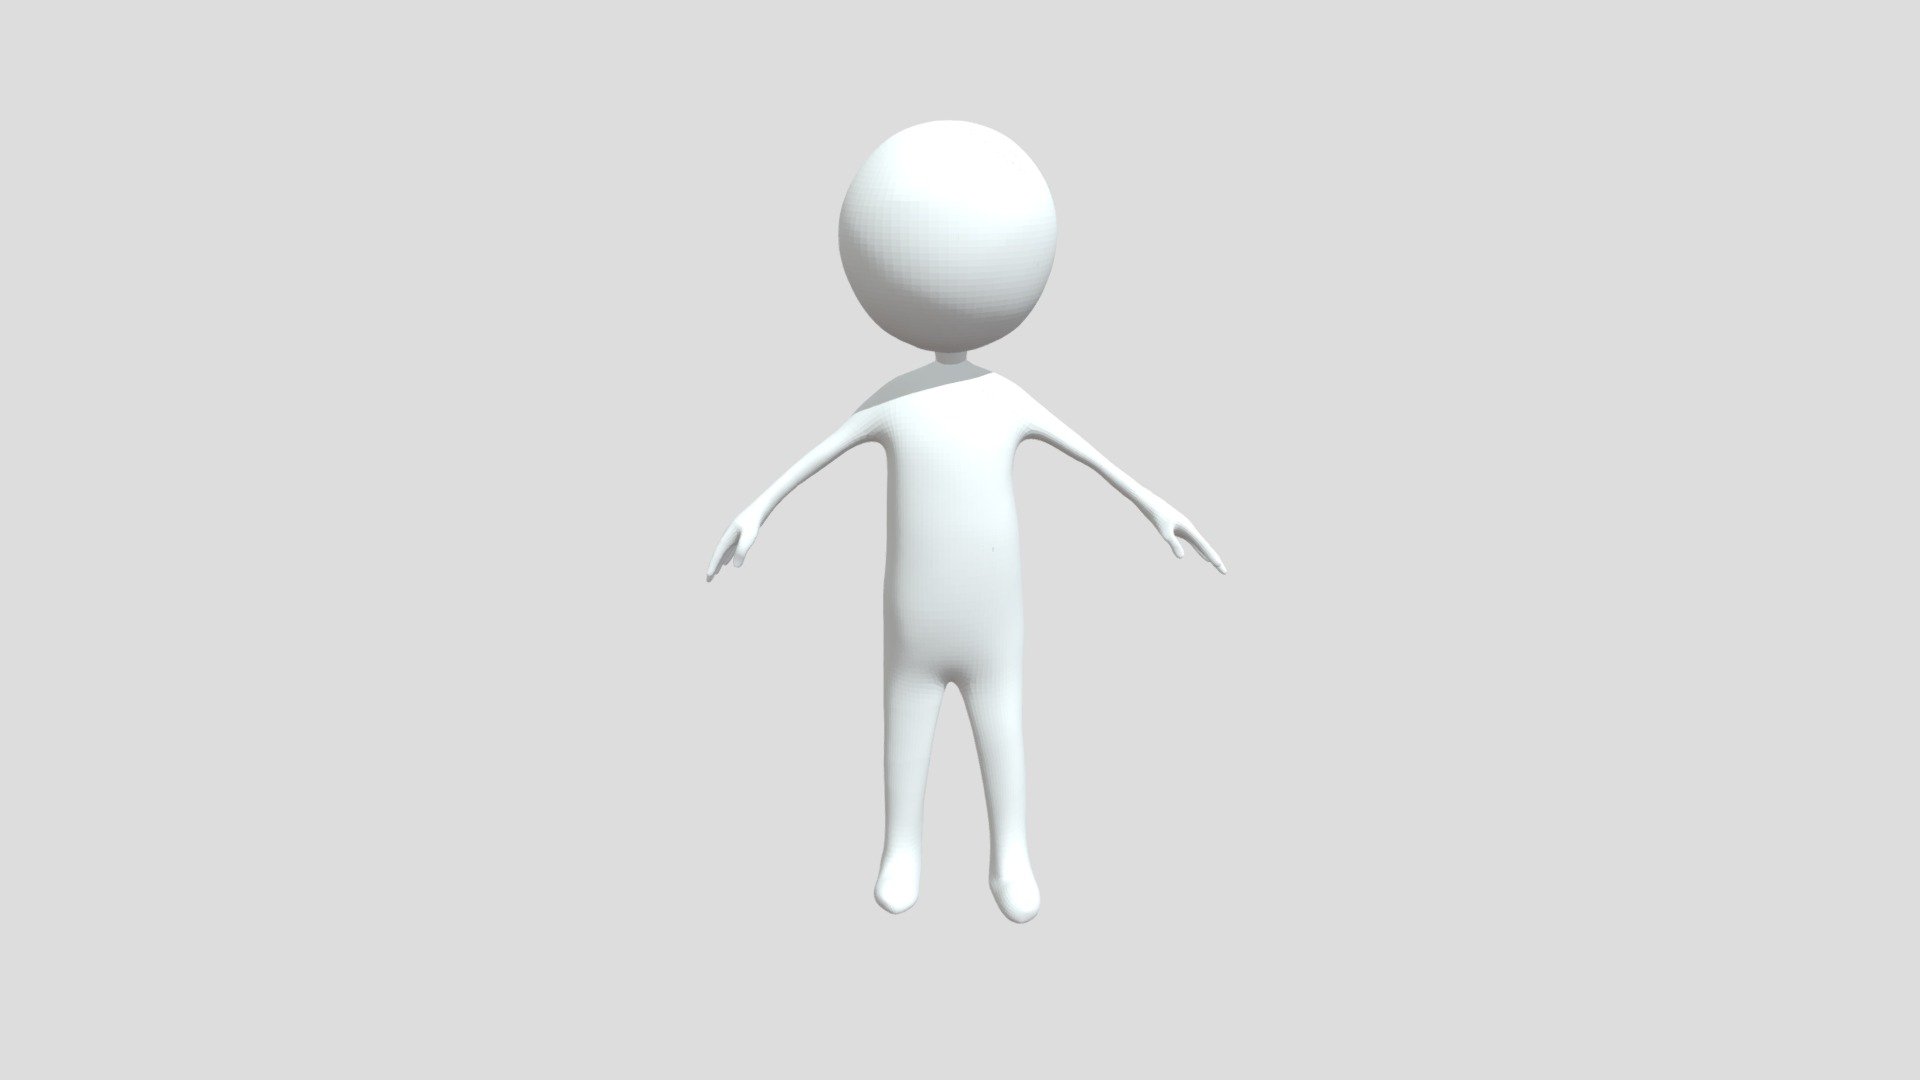 blender 3d stick figure download